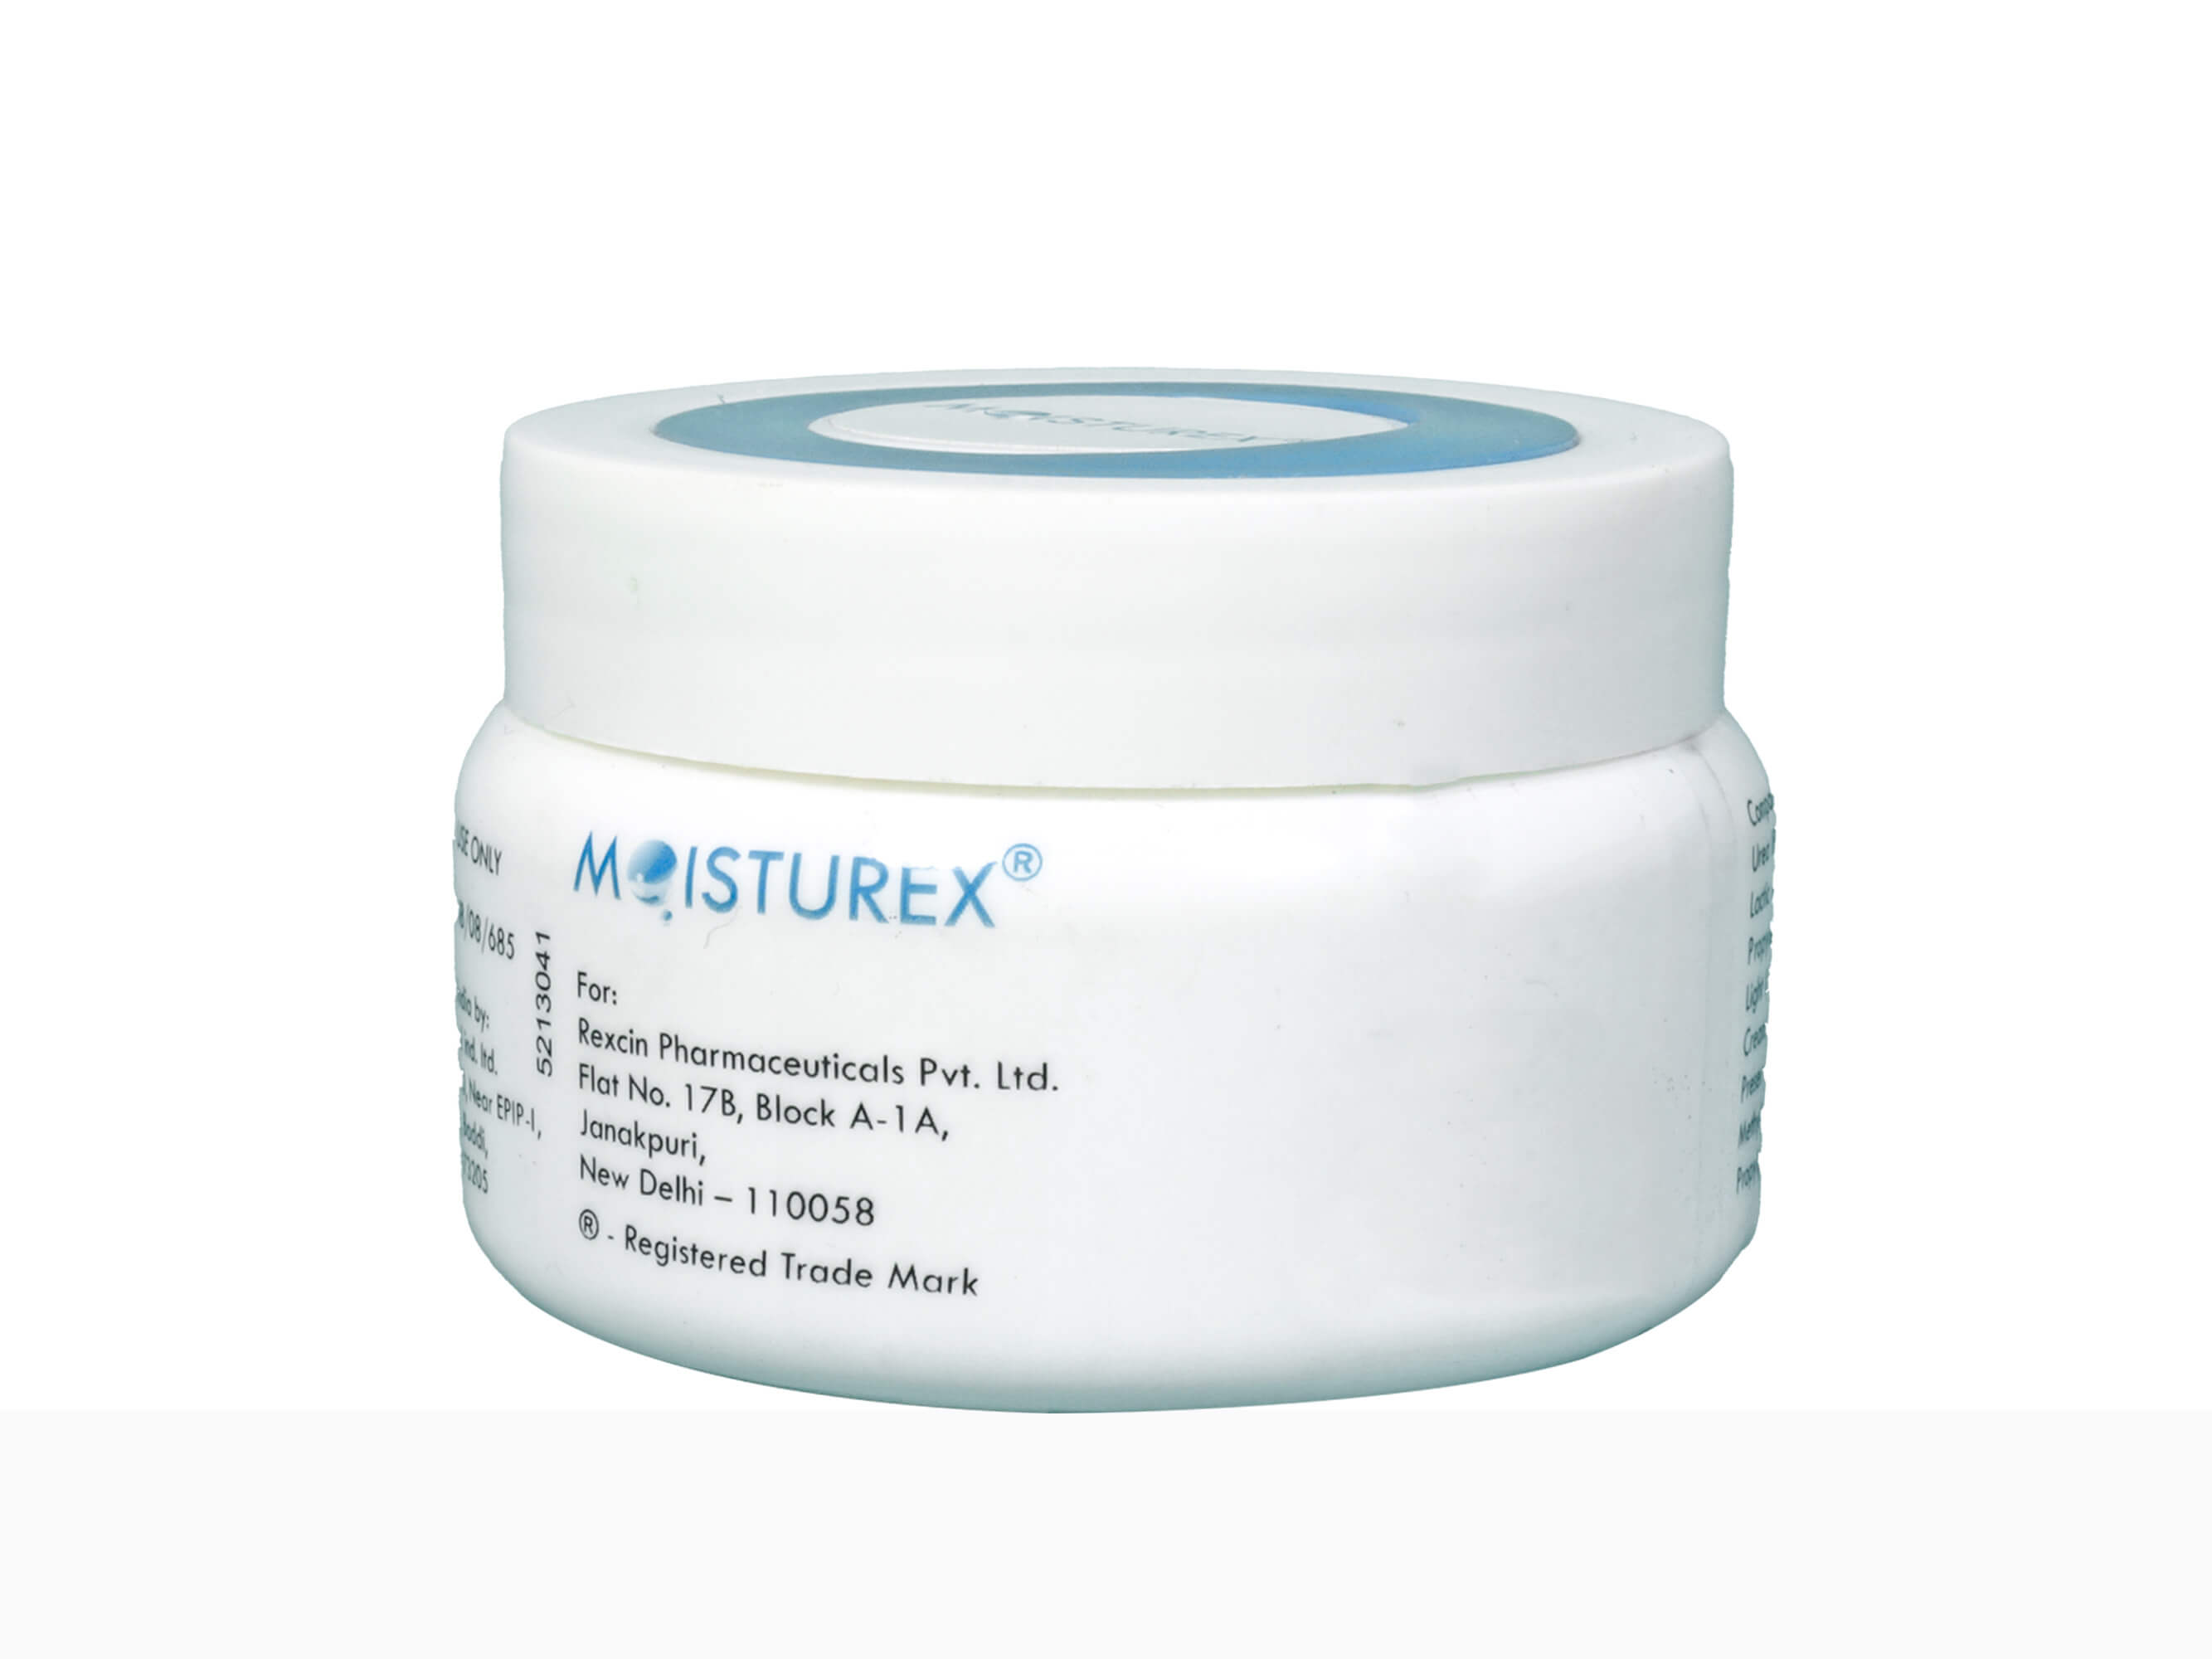 Moisturex Cream - Clinikally